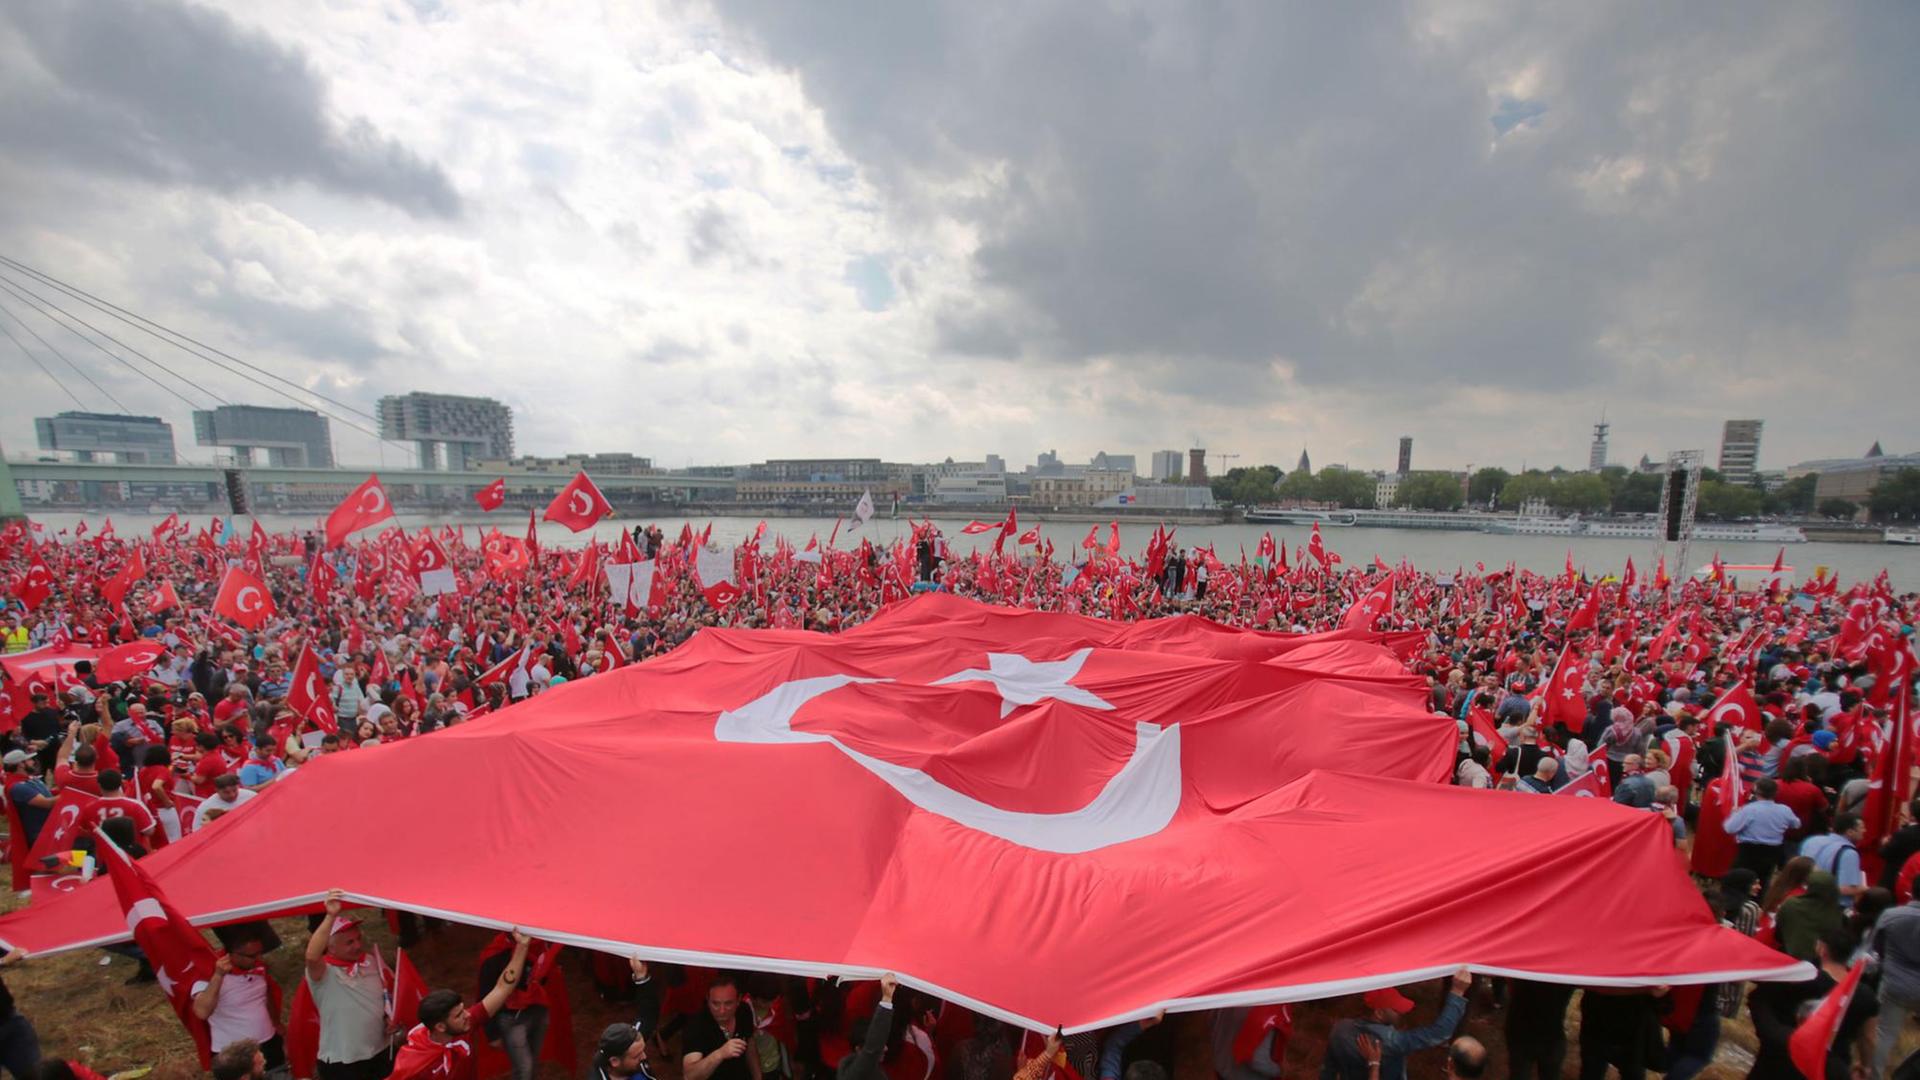 Anhänger des türkischen Staatspräsidenten Erdogan schwenken am 31.07.2016 in Köln Fahnen. Doch es gibt auch genug Gegner.